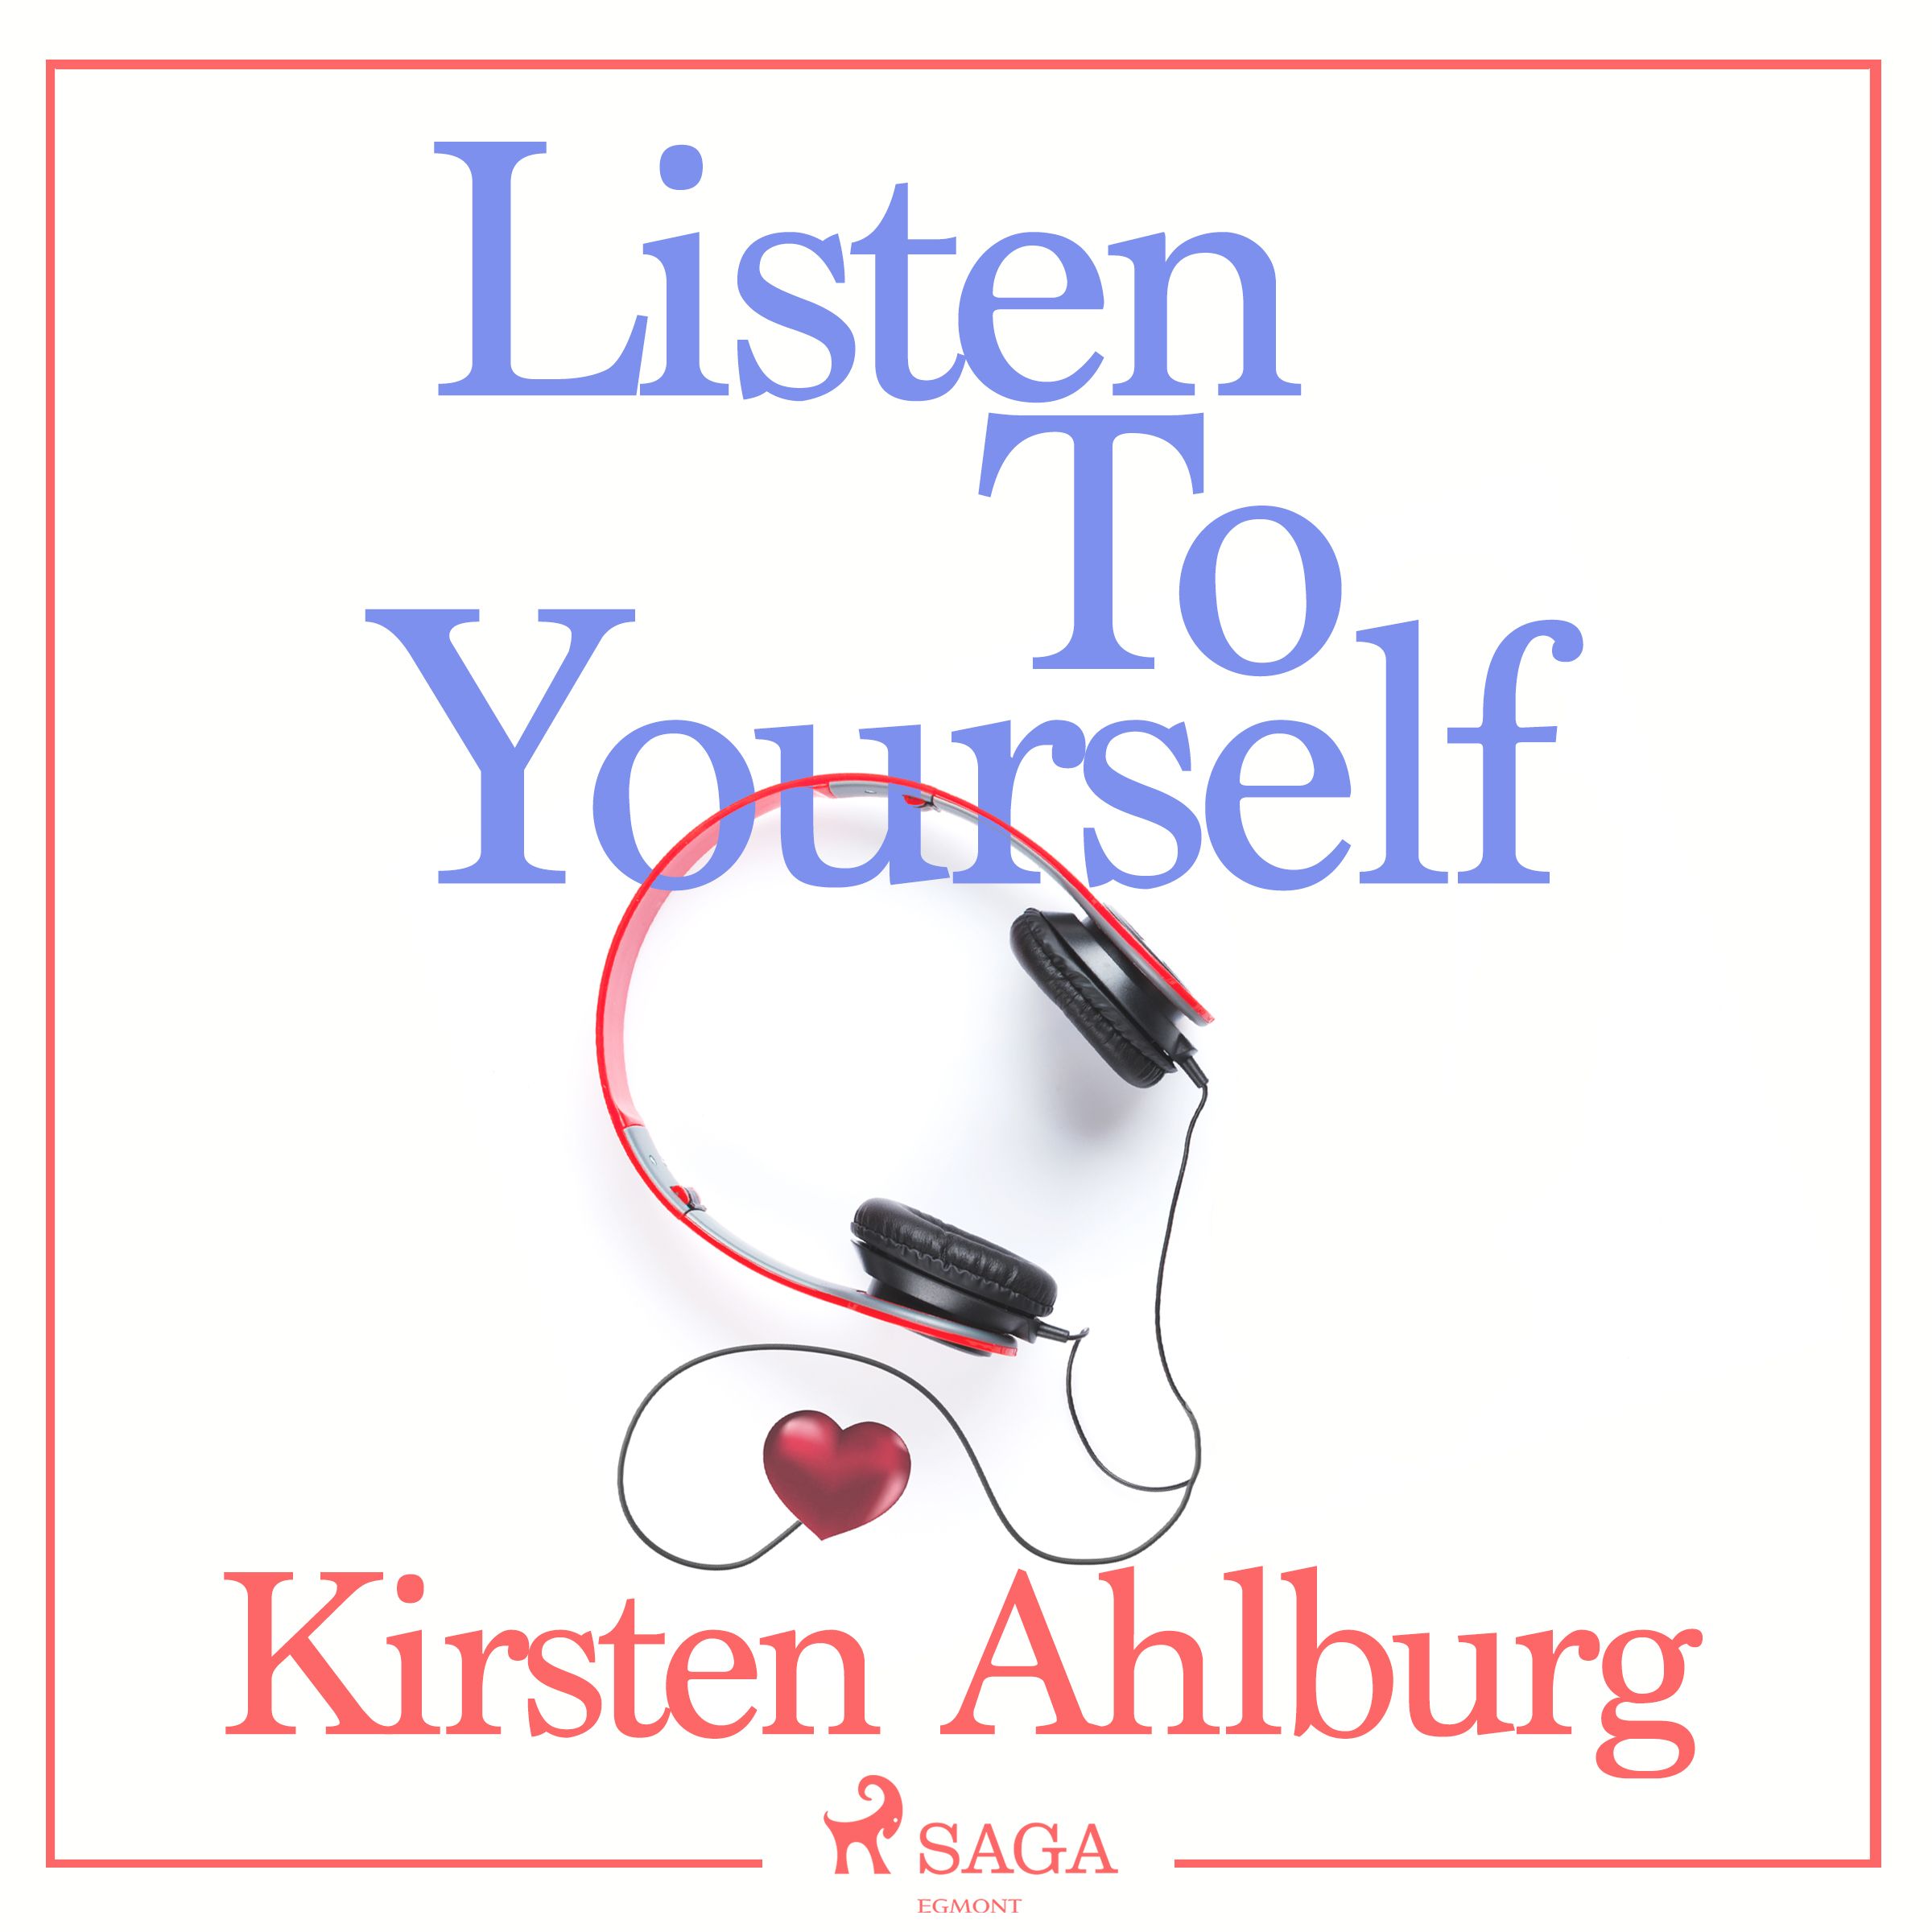 Listen to Yourself, ljudbok av Kirsten Ahlburg